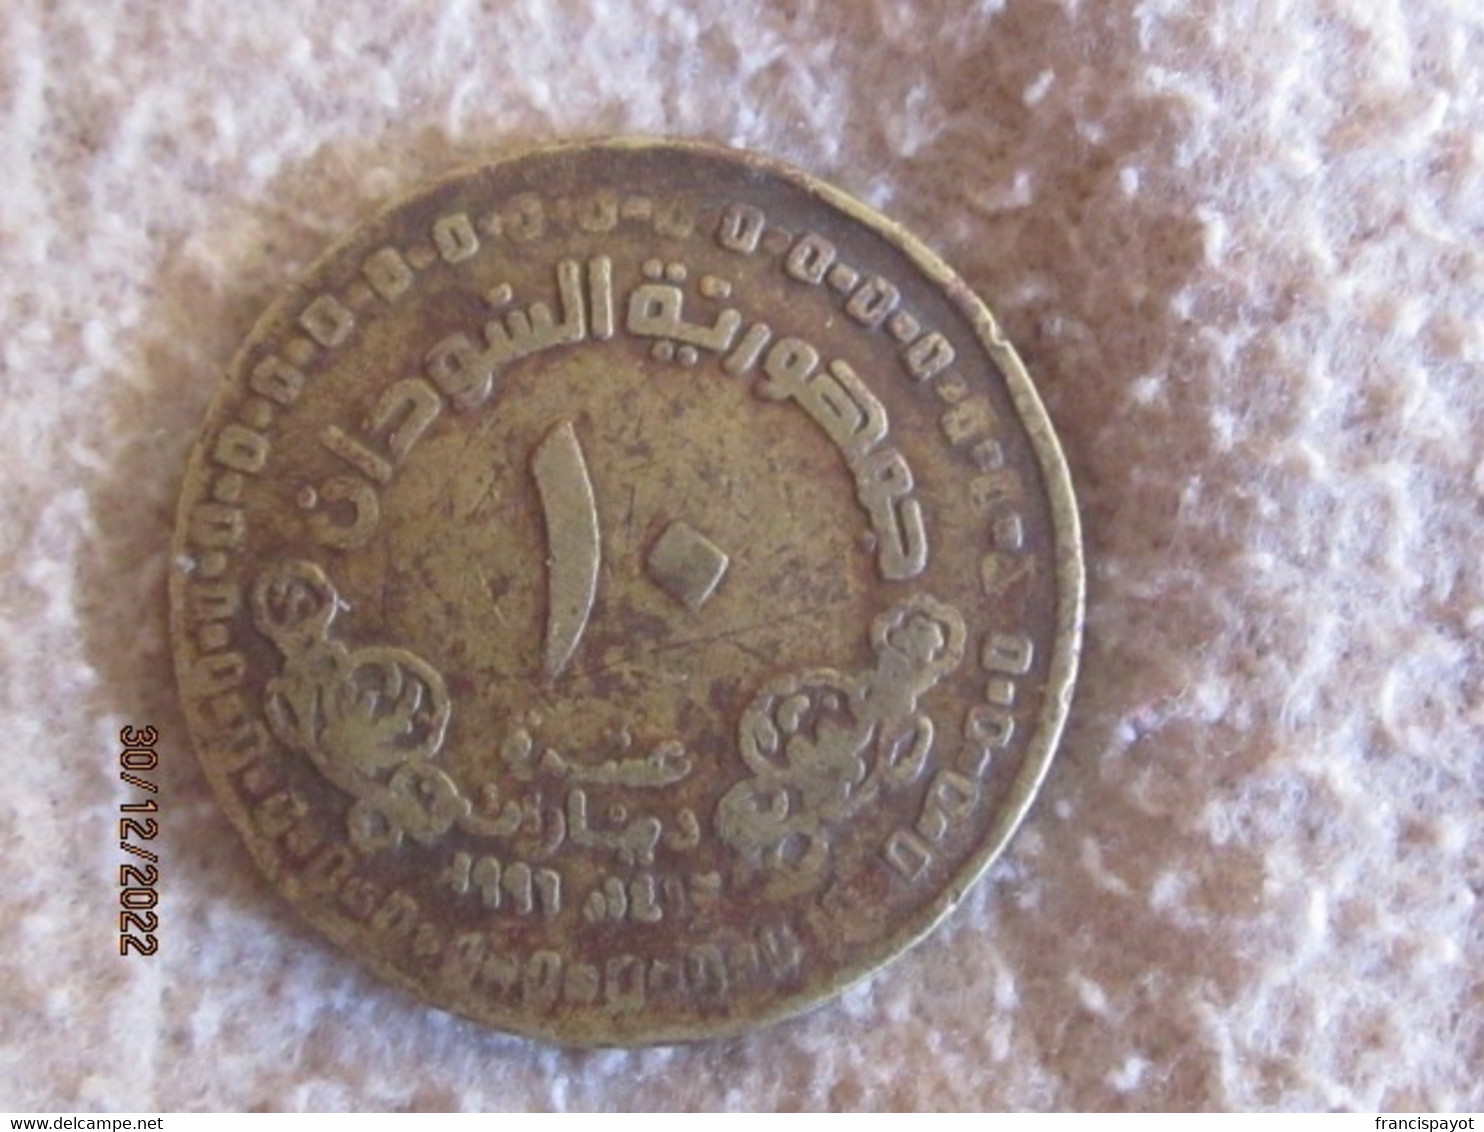 Sudan: 10 Dinars 1996 - Sudan